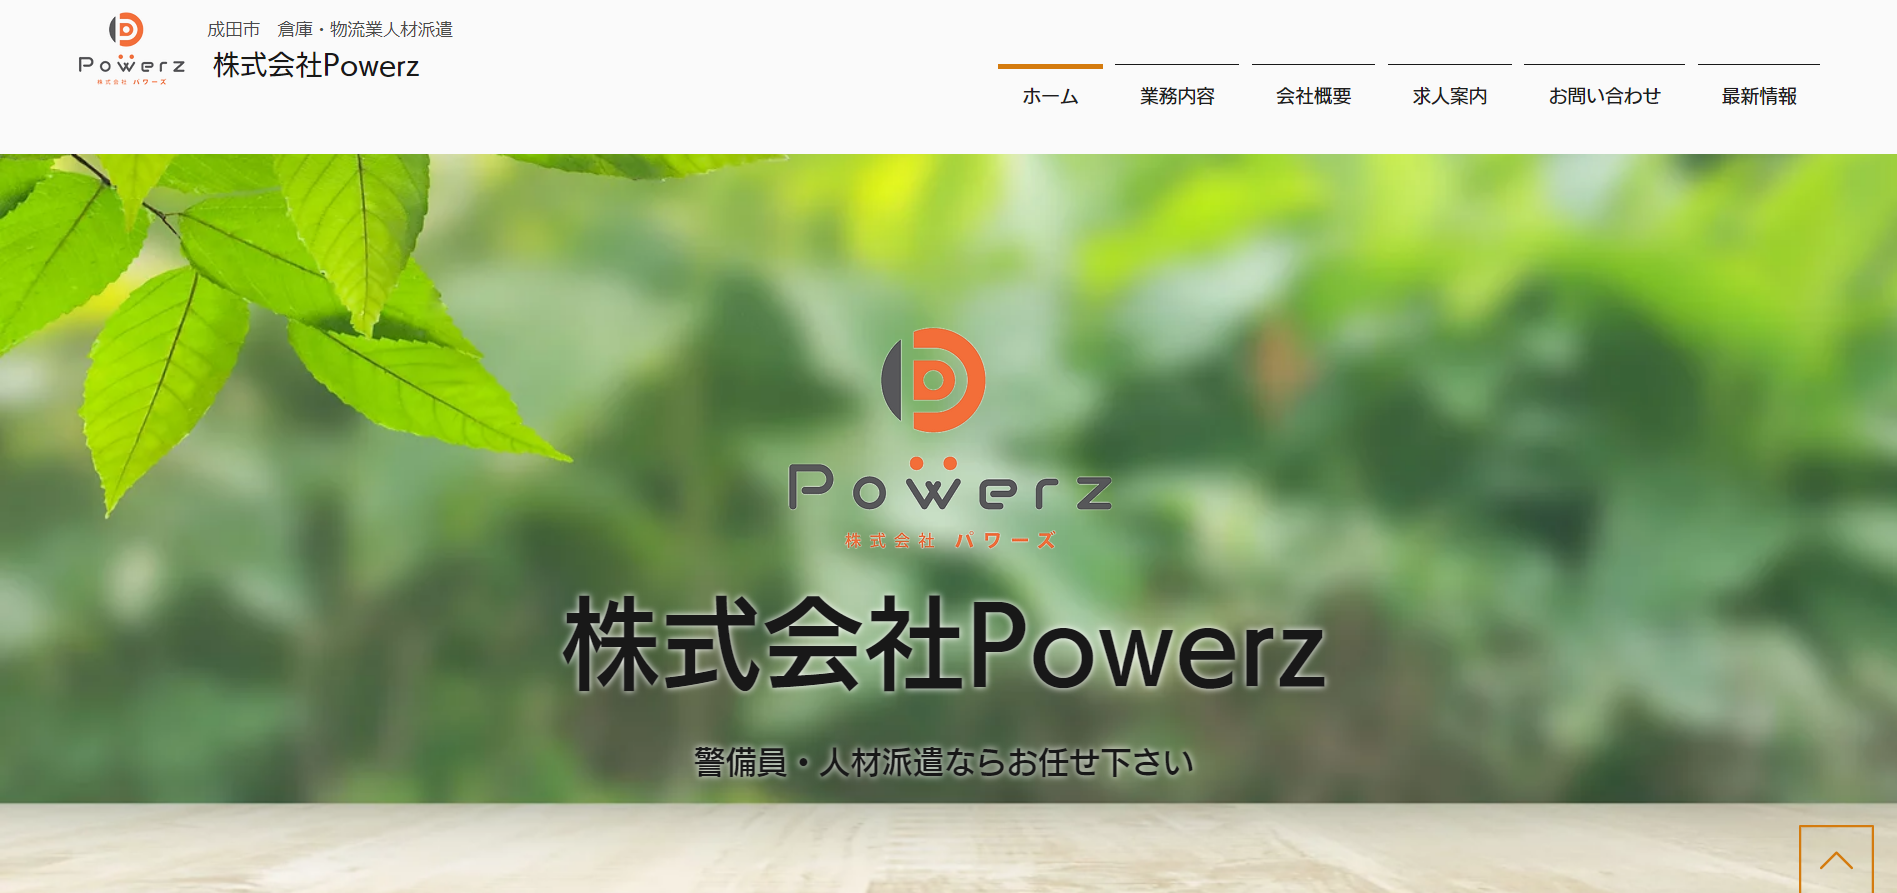 株式会社 Powerzの株式会社Powerz:人材紹介サービス